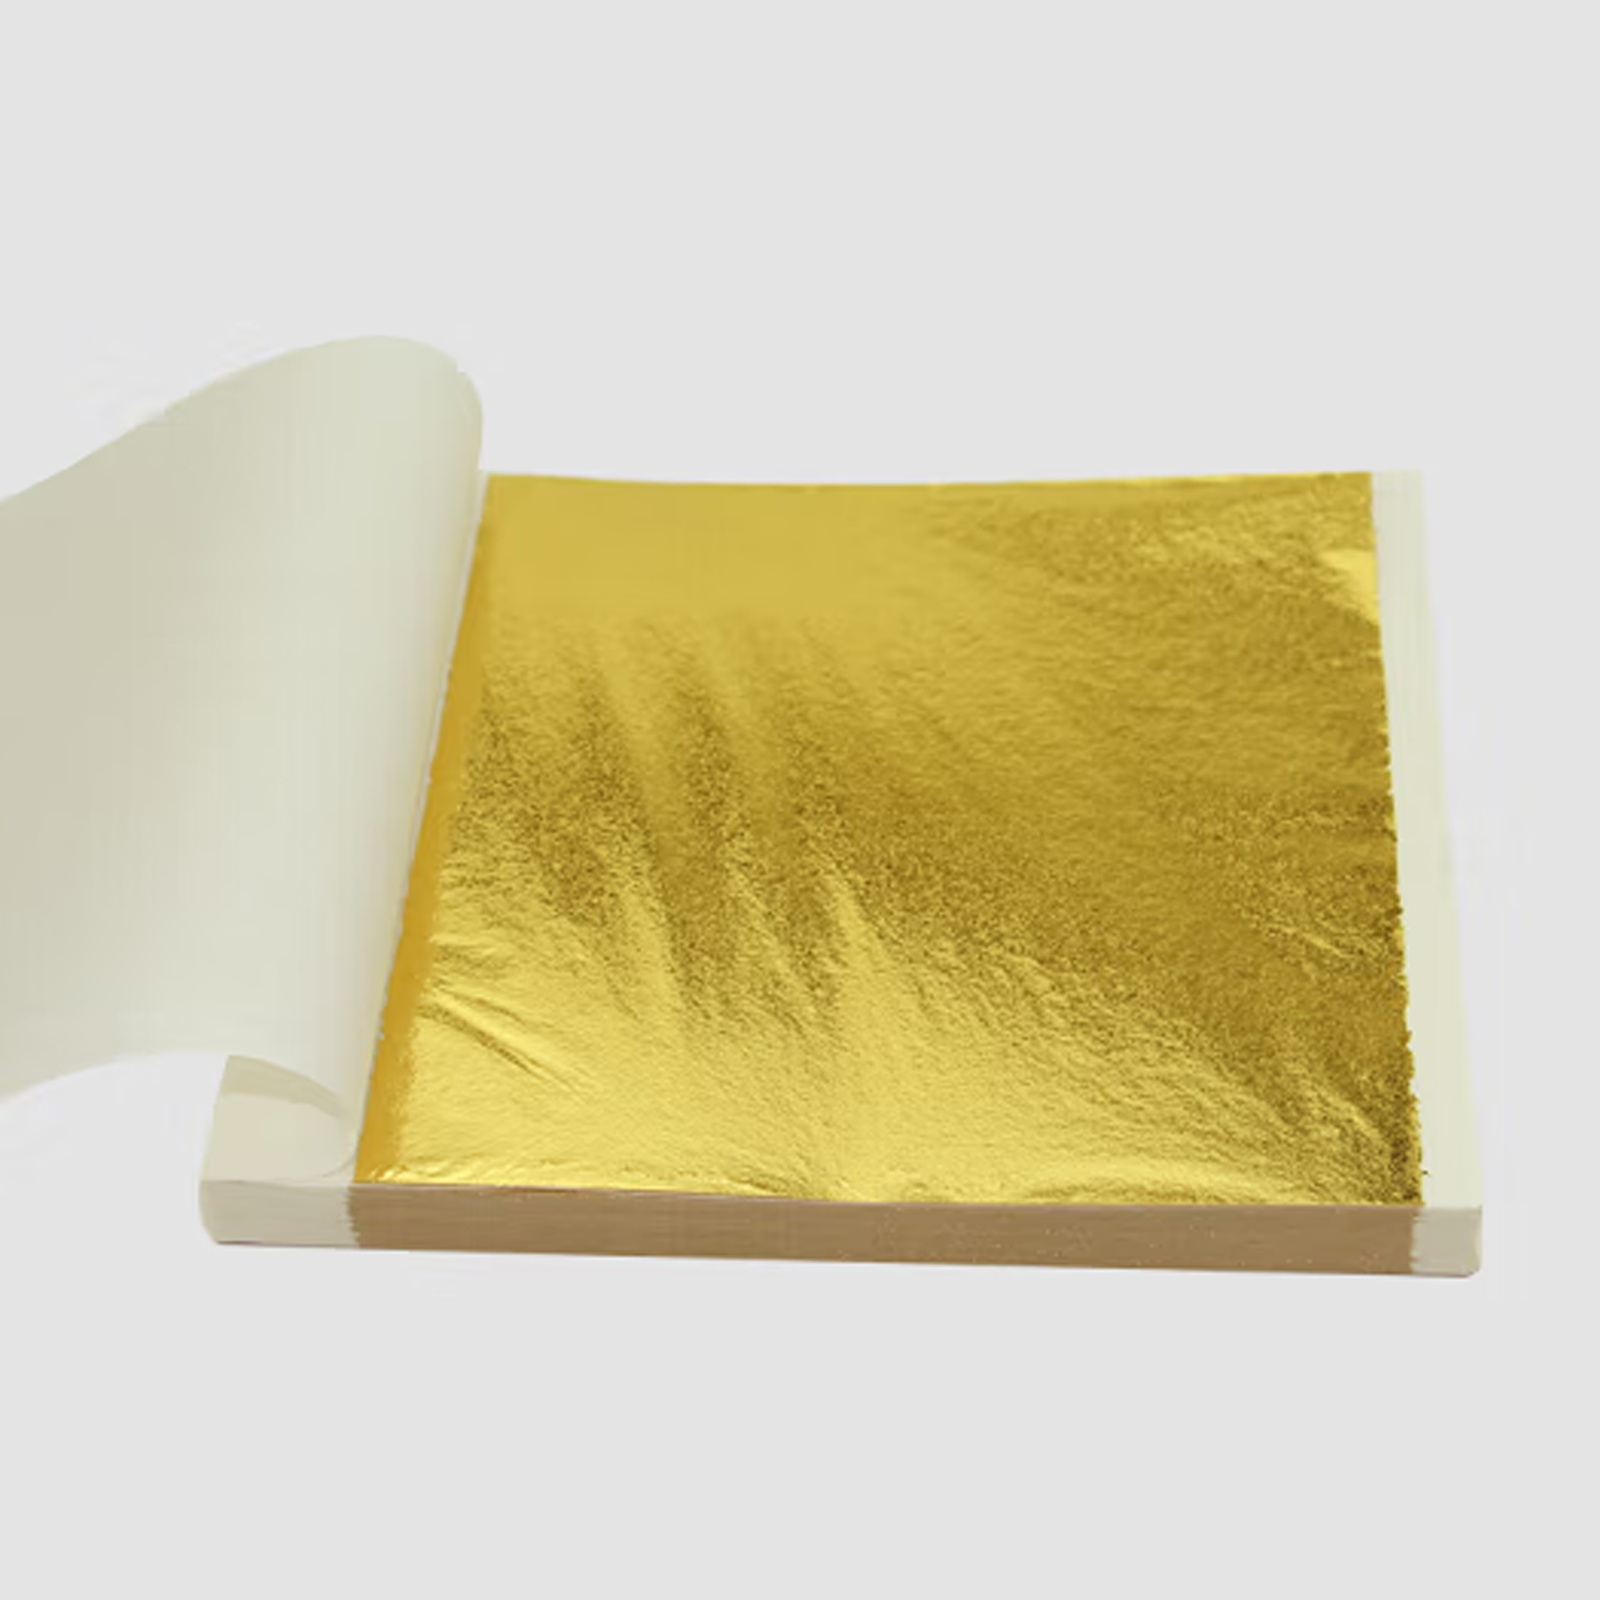 Imitation Gold Folie Leaf Blat Fir Dekoratioun Mauer Art Handwierksgeschir